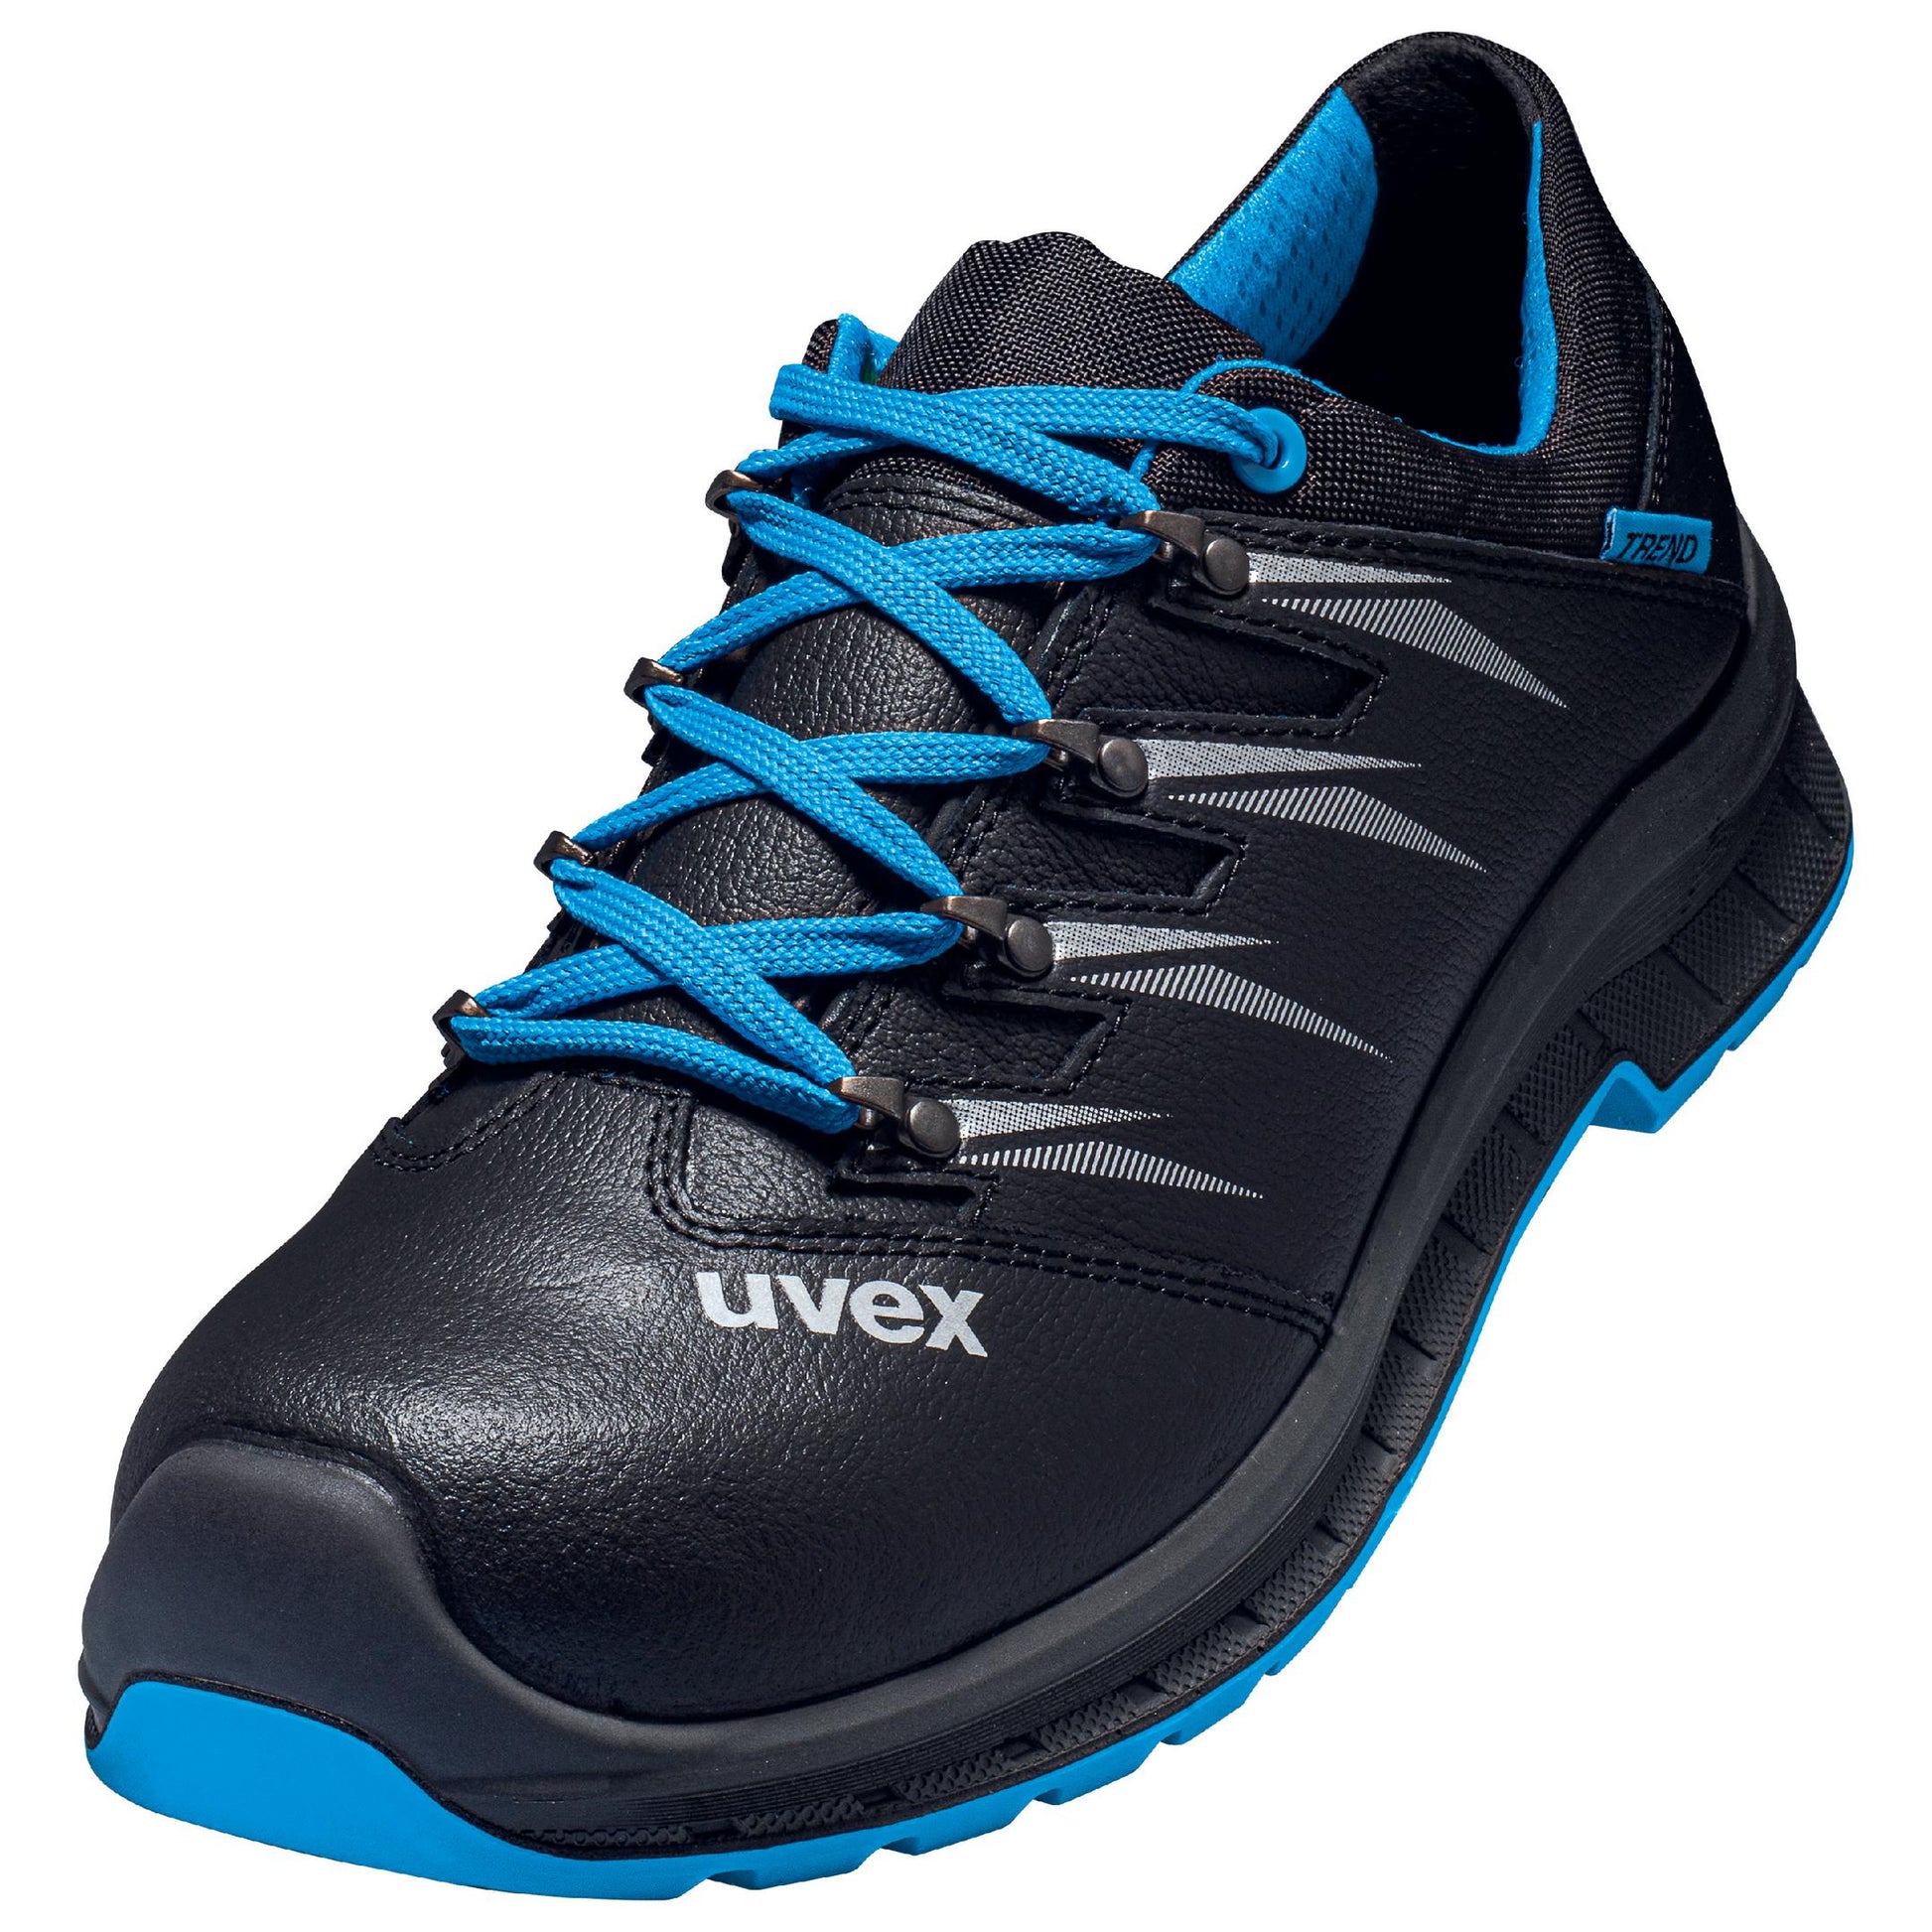 uvex 2 trend Sicherheitsschuh S3 Halbschuh- mit breiter Passform Hochwertige Schuhe